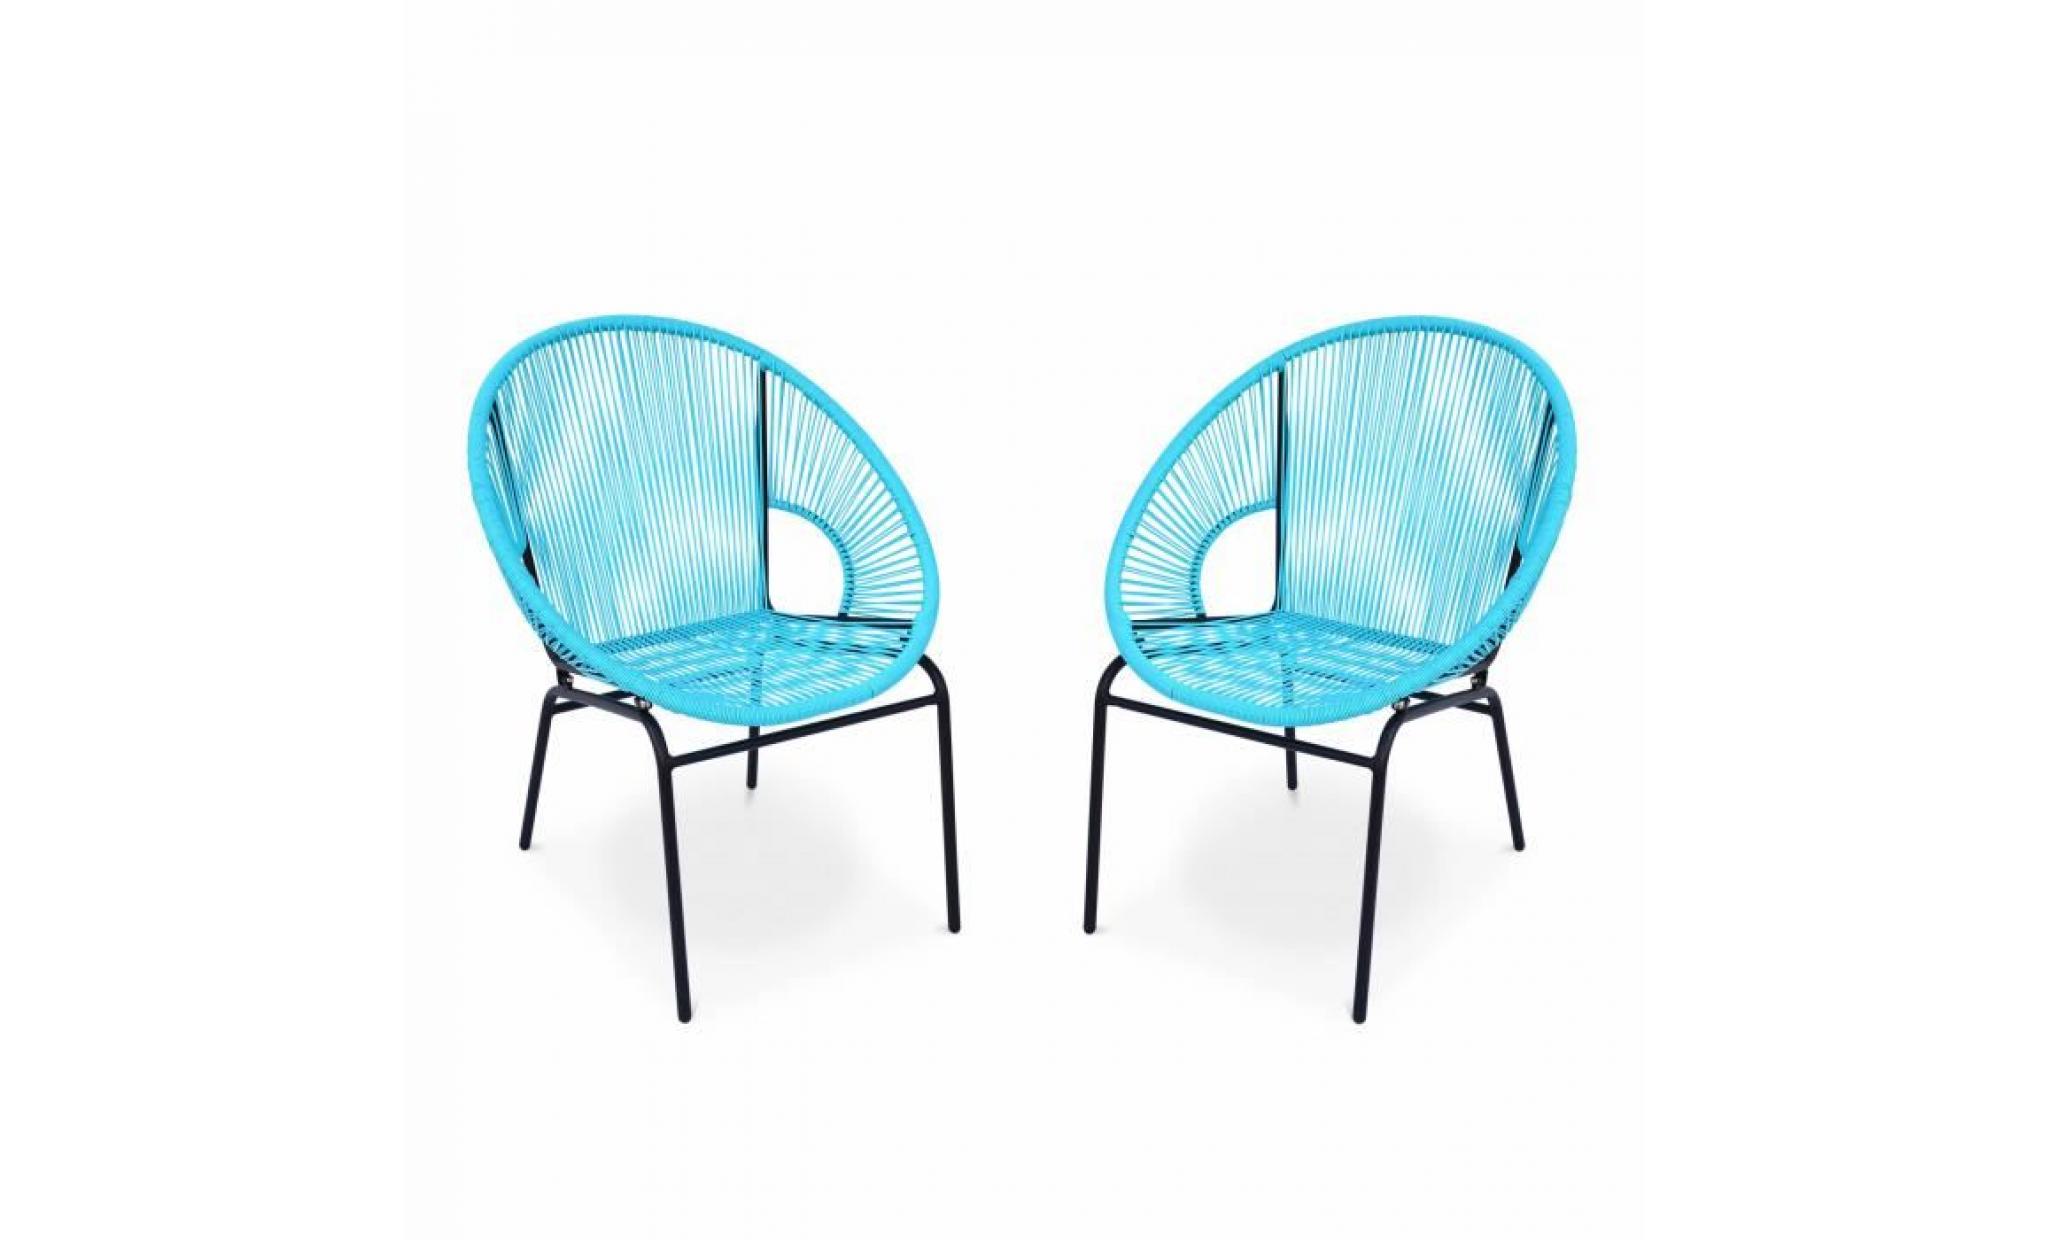 2 fauteuils design   mexico turquoise   fauteuils design cordage pvc par lot de 2